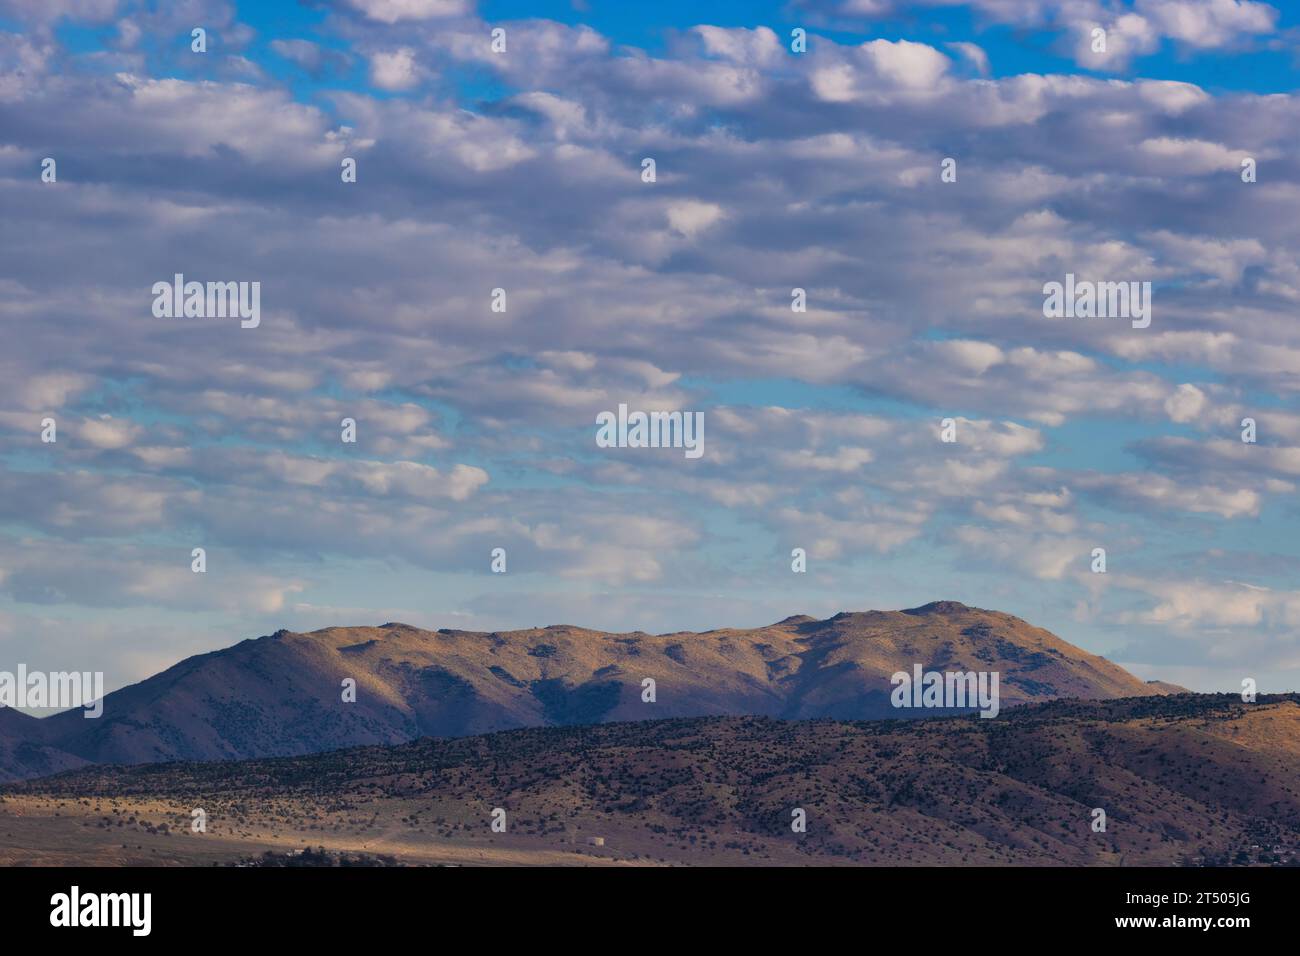 Nubes sobre las montañas en esta vista del paisaje desde el aeropuerto Stead en Nevada. Foto de stock